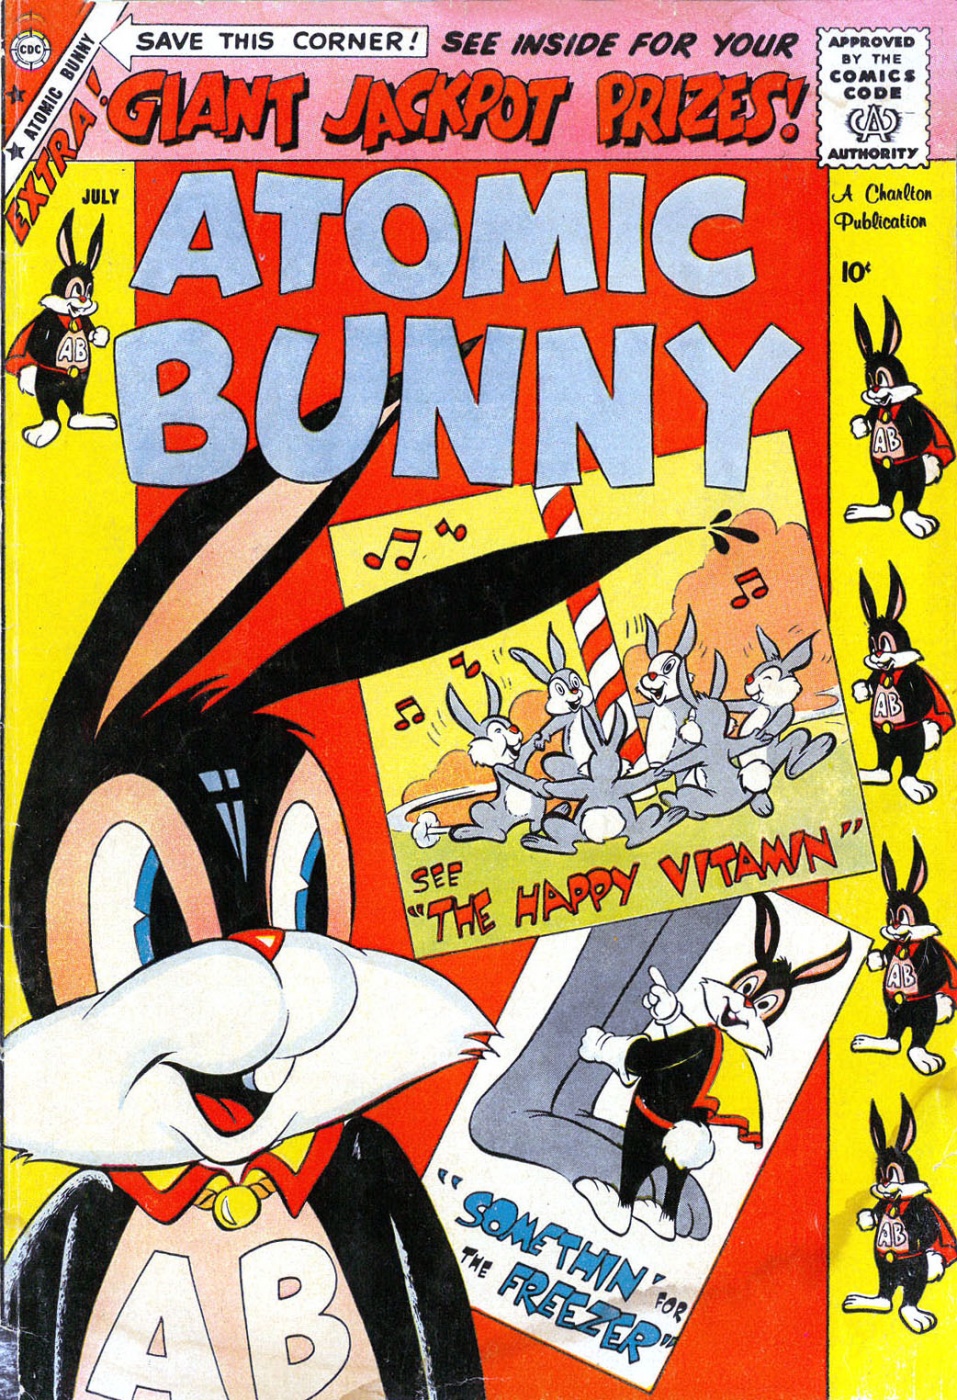 Atomic Rabbit #25